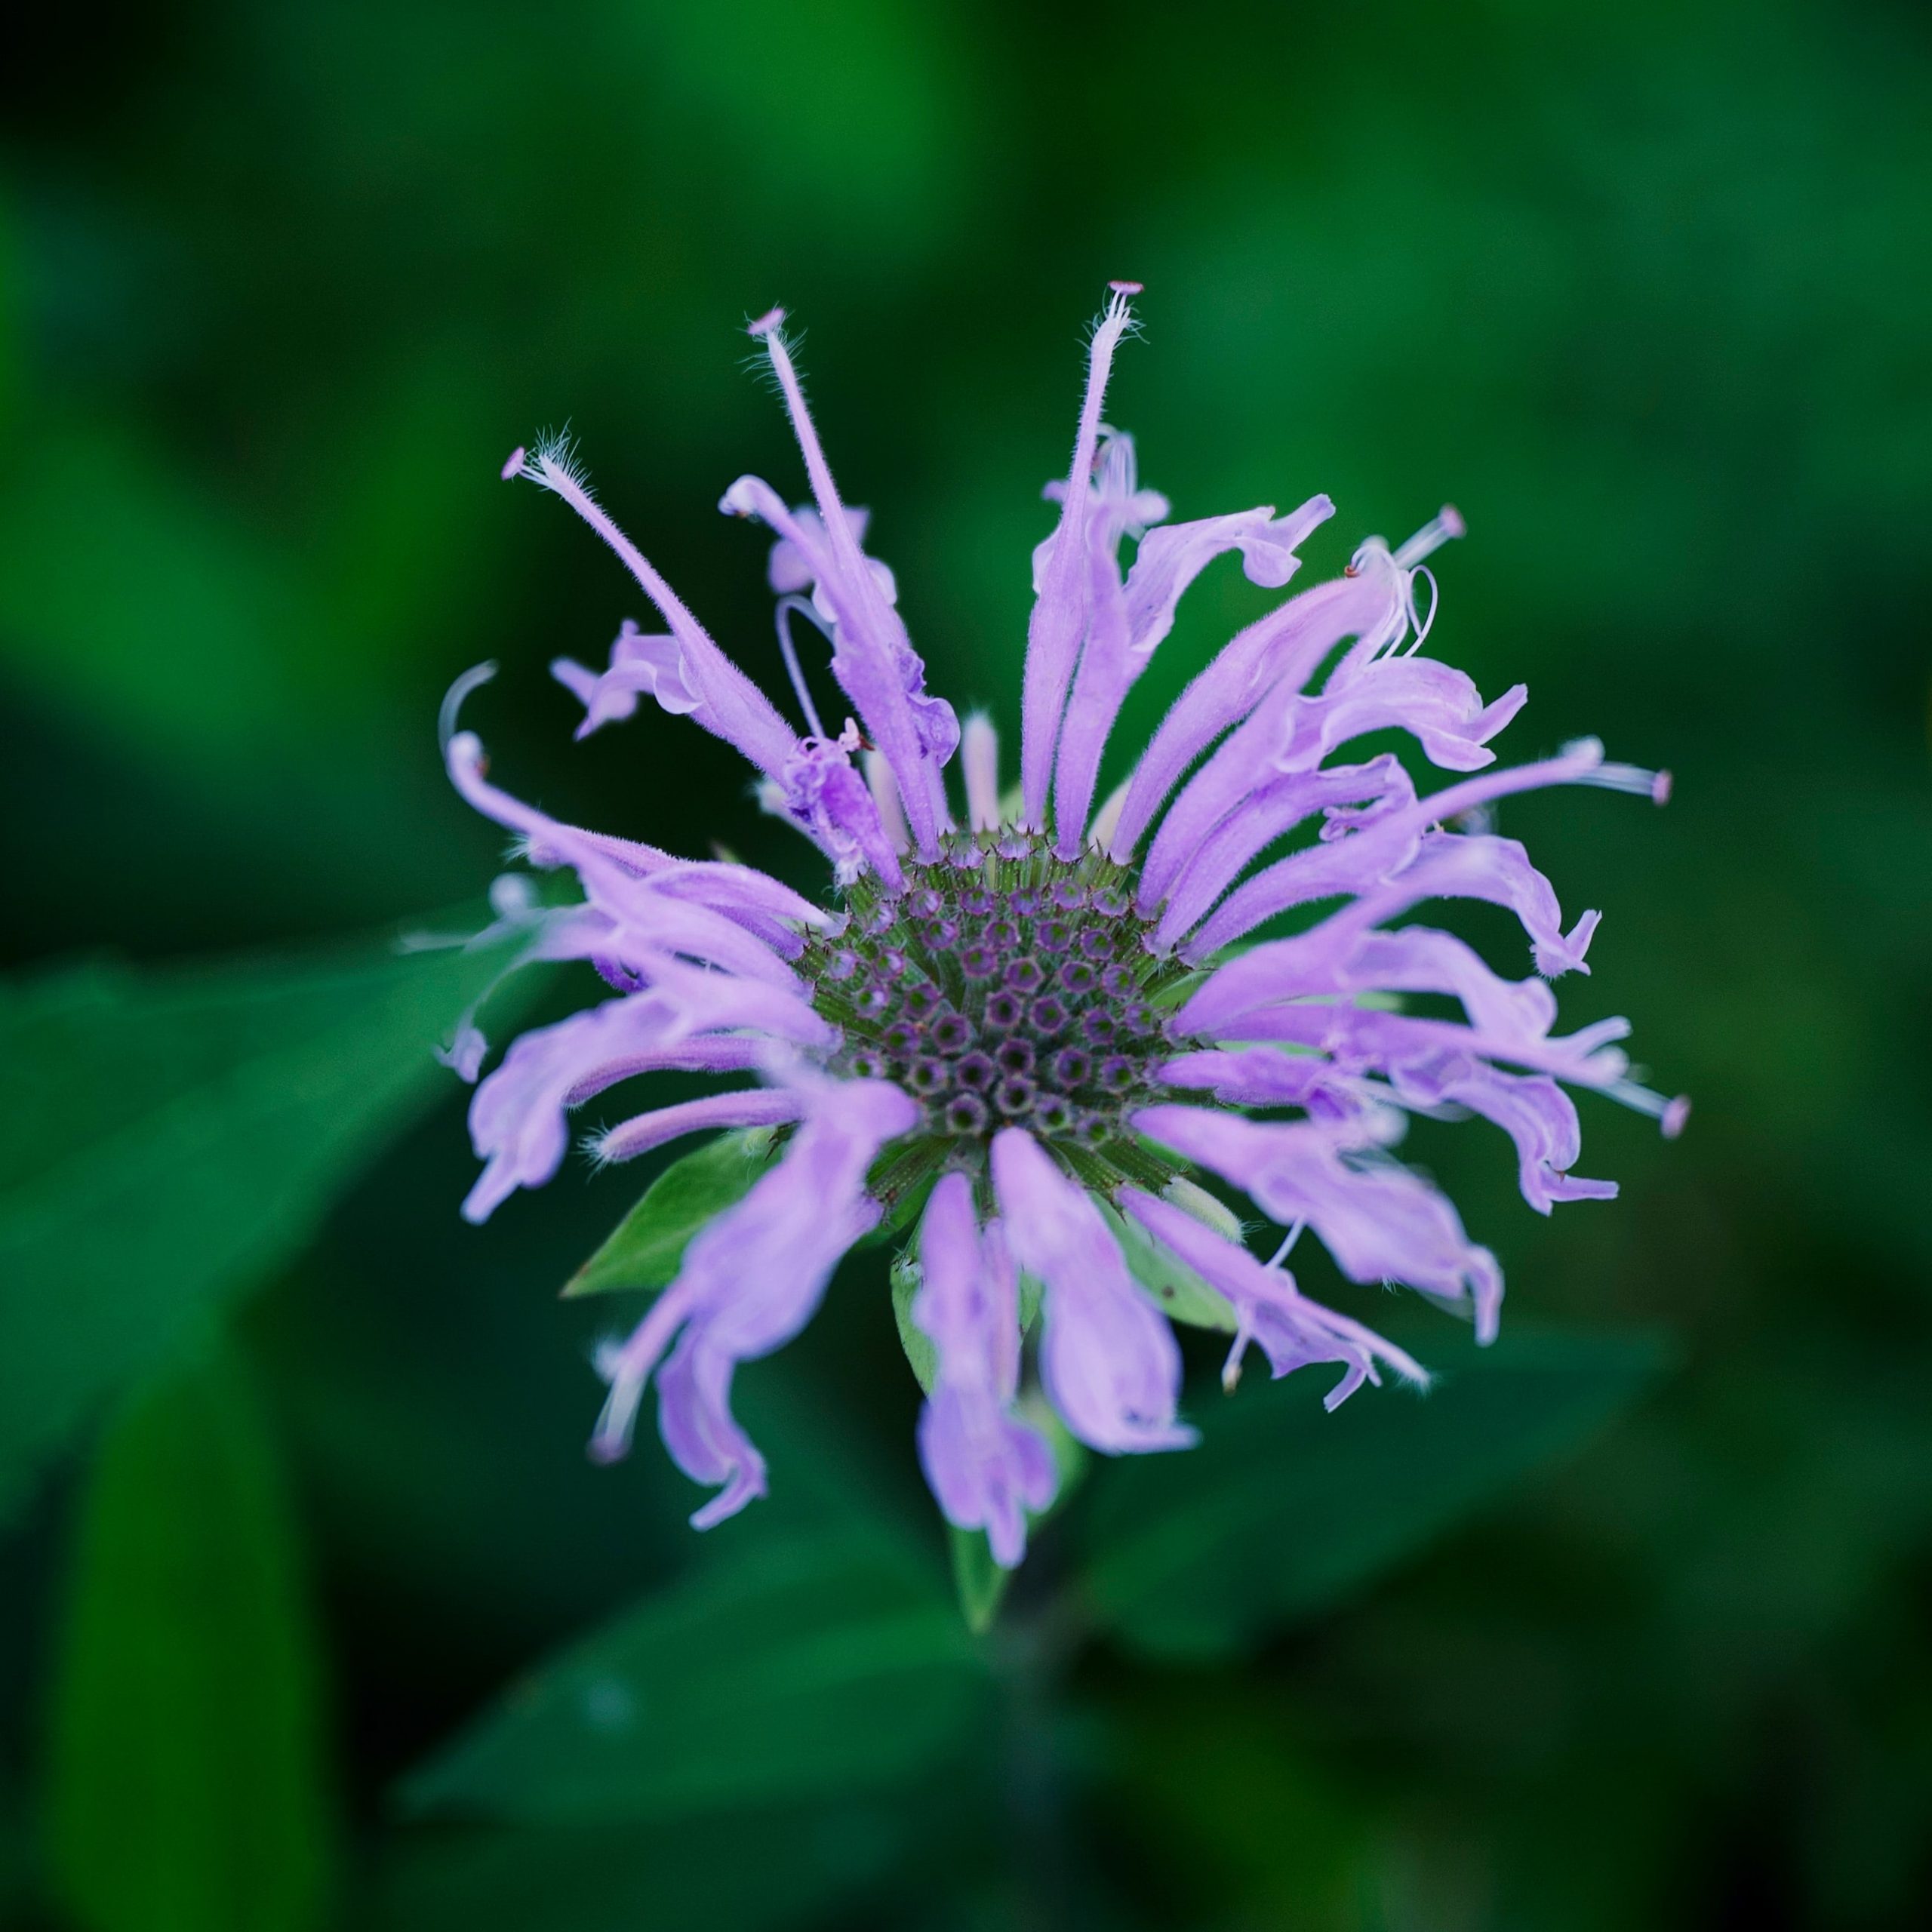 bergamot flower